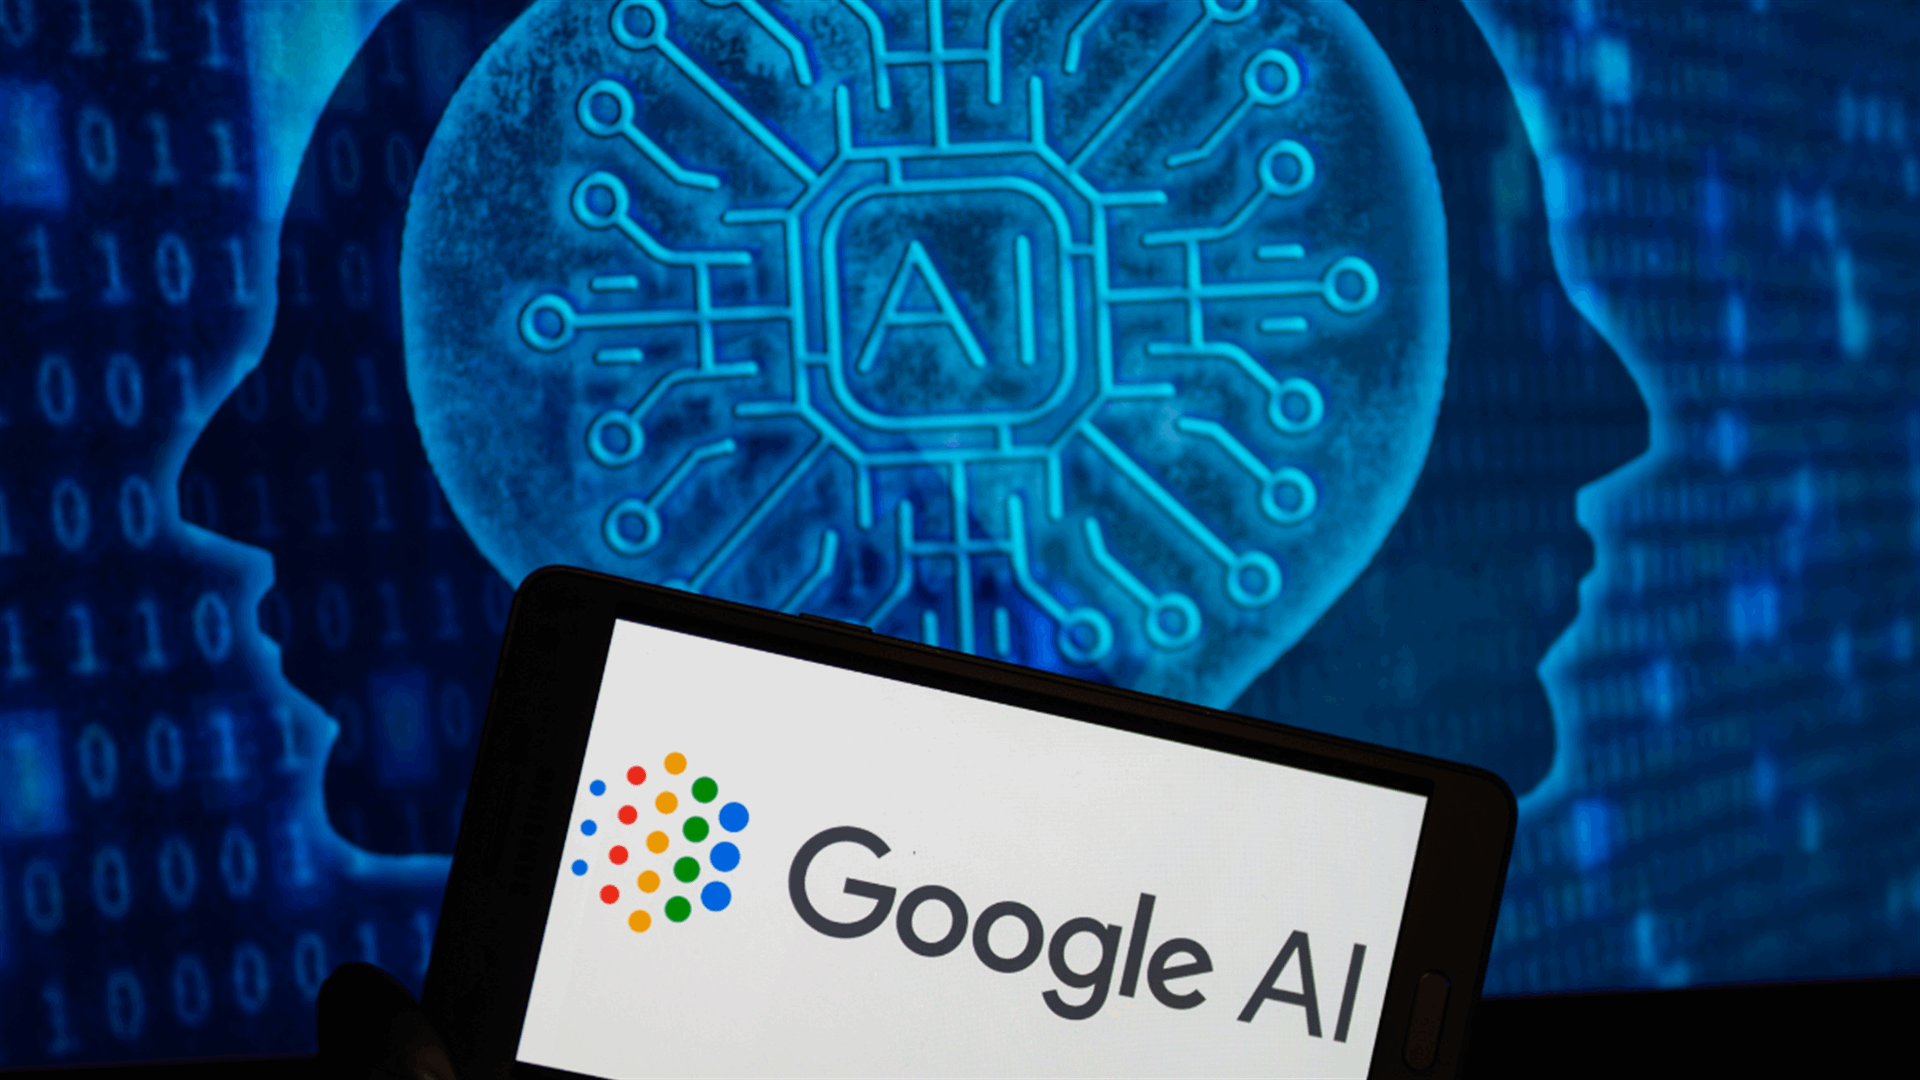 زلات برنامج الذكاء الاصطناعي لدى غوغل تضيء على النفوذ المفرط لعمالقة التكنولوجيا